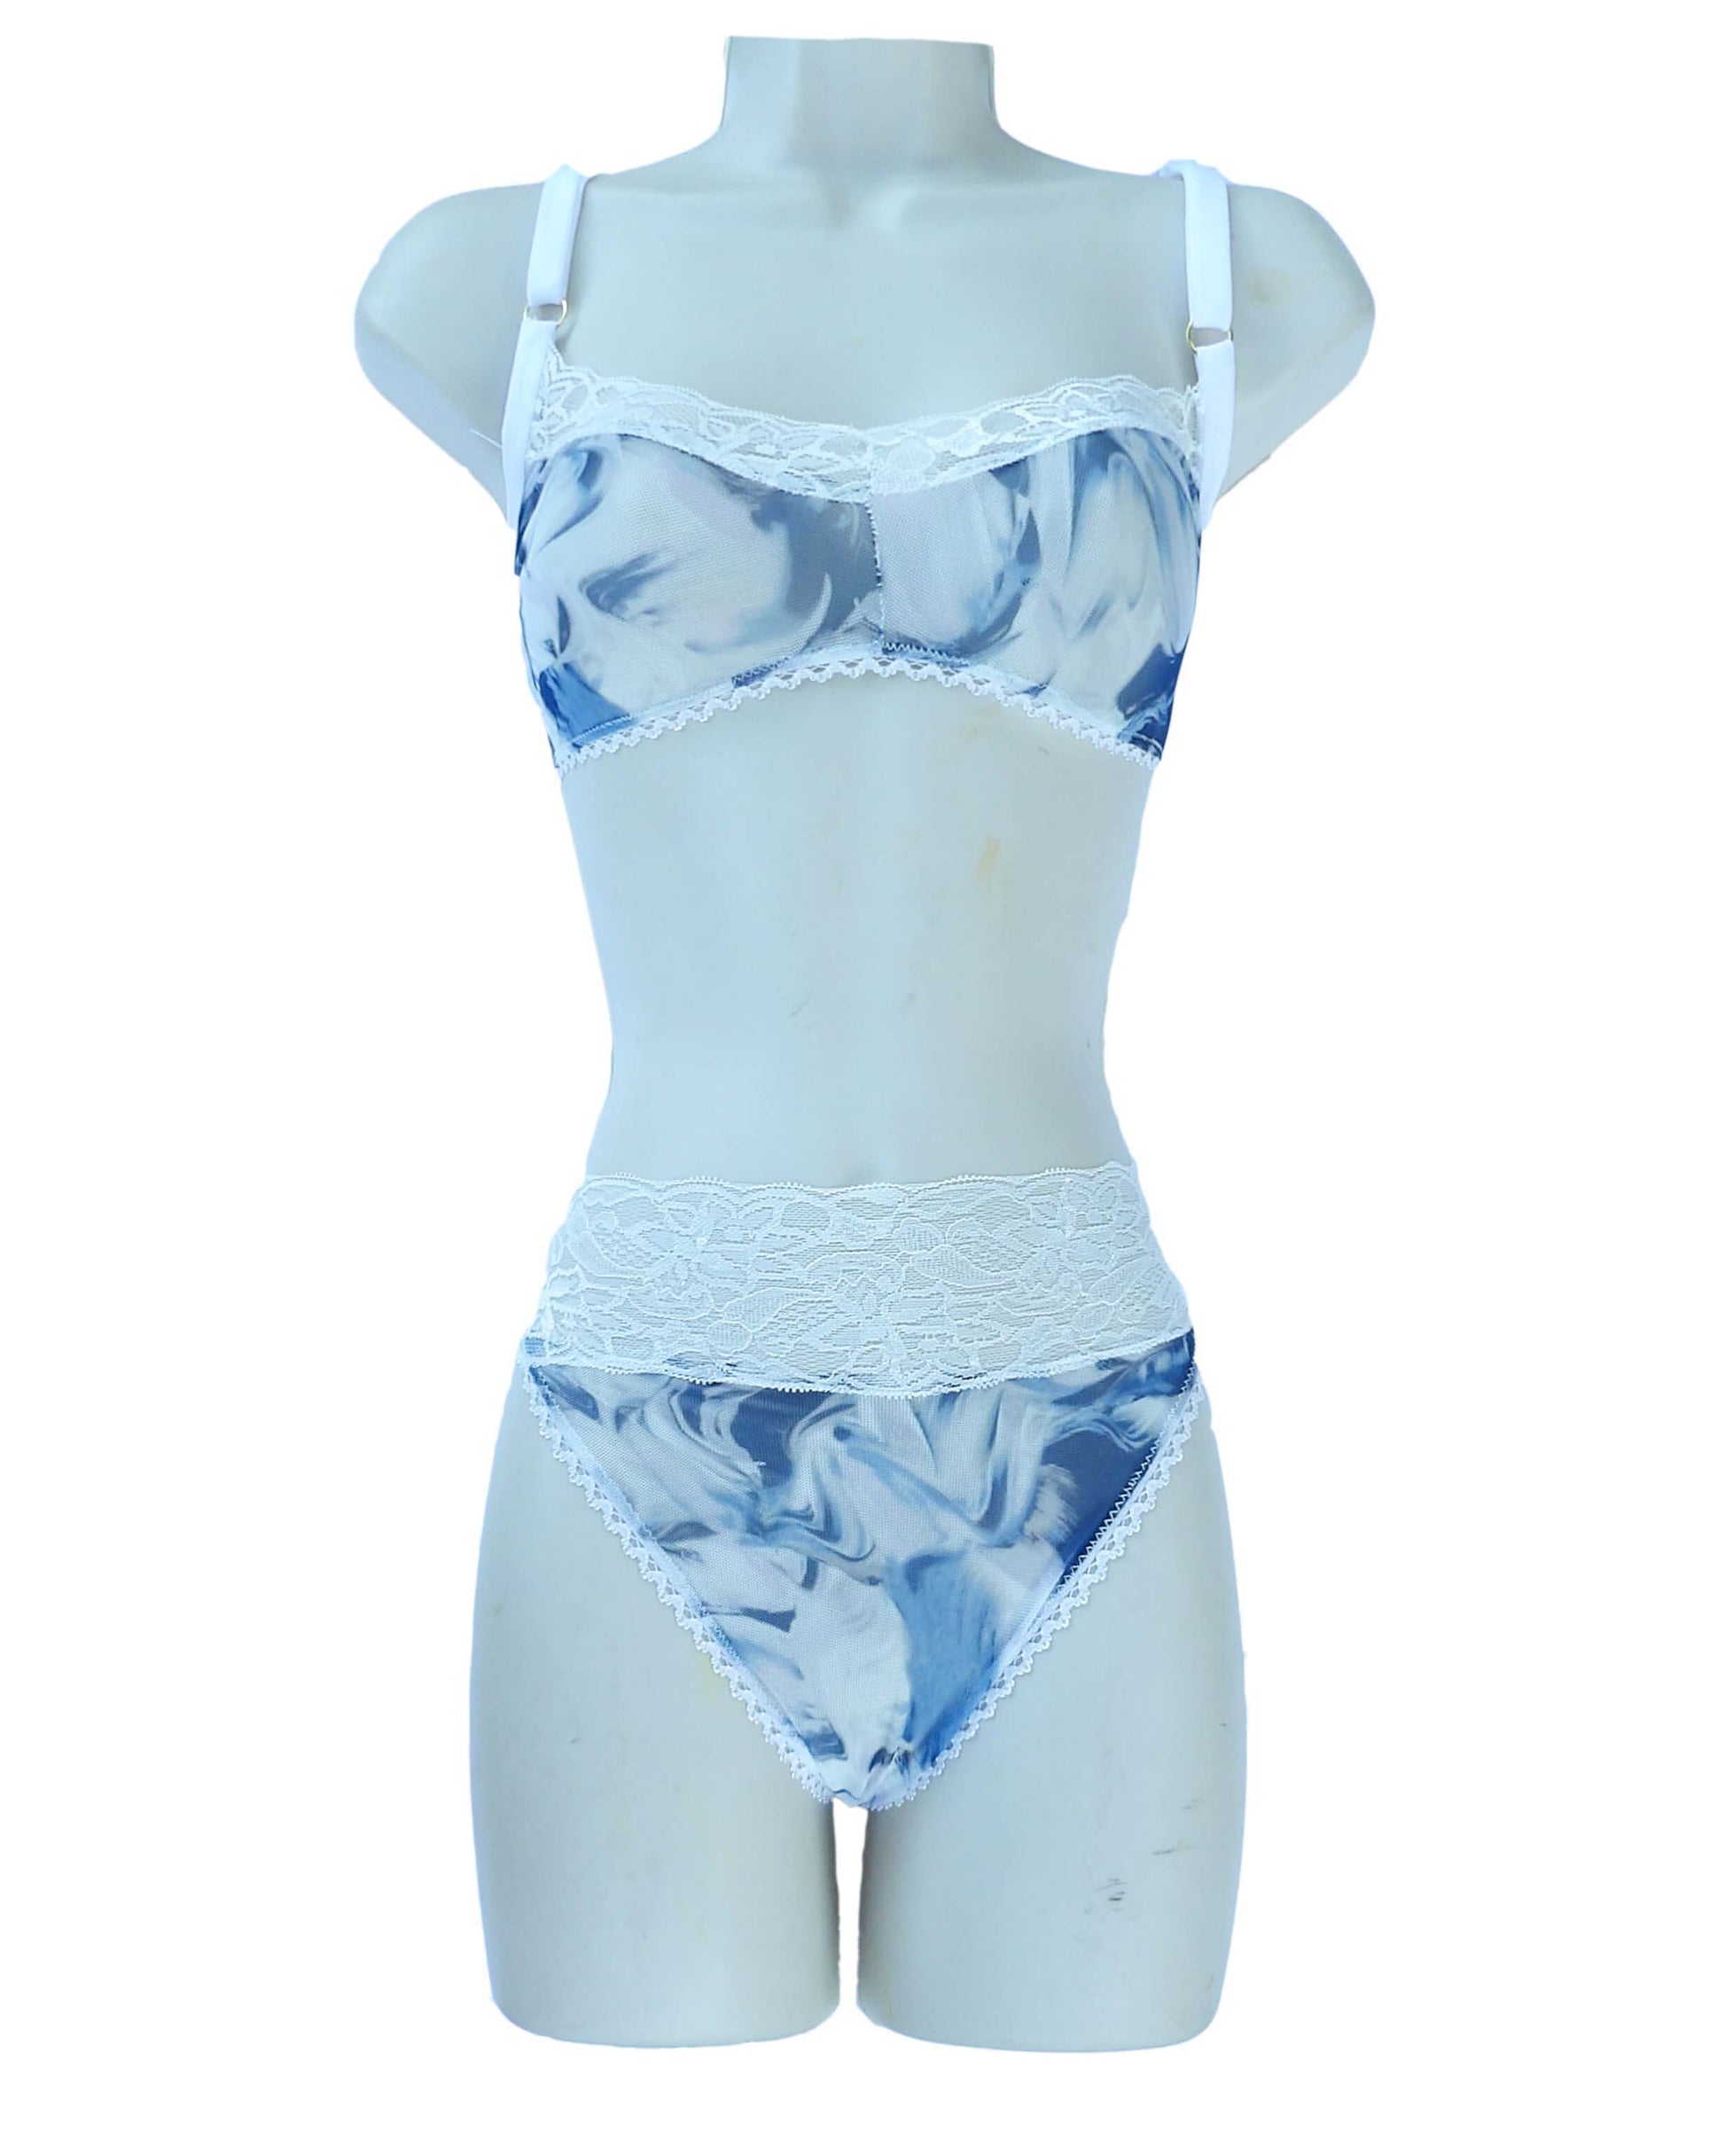 unique blue marbled lingerie set on mannequin